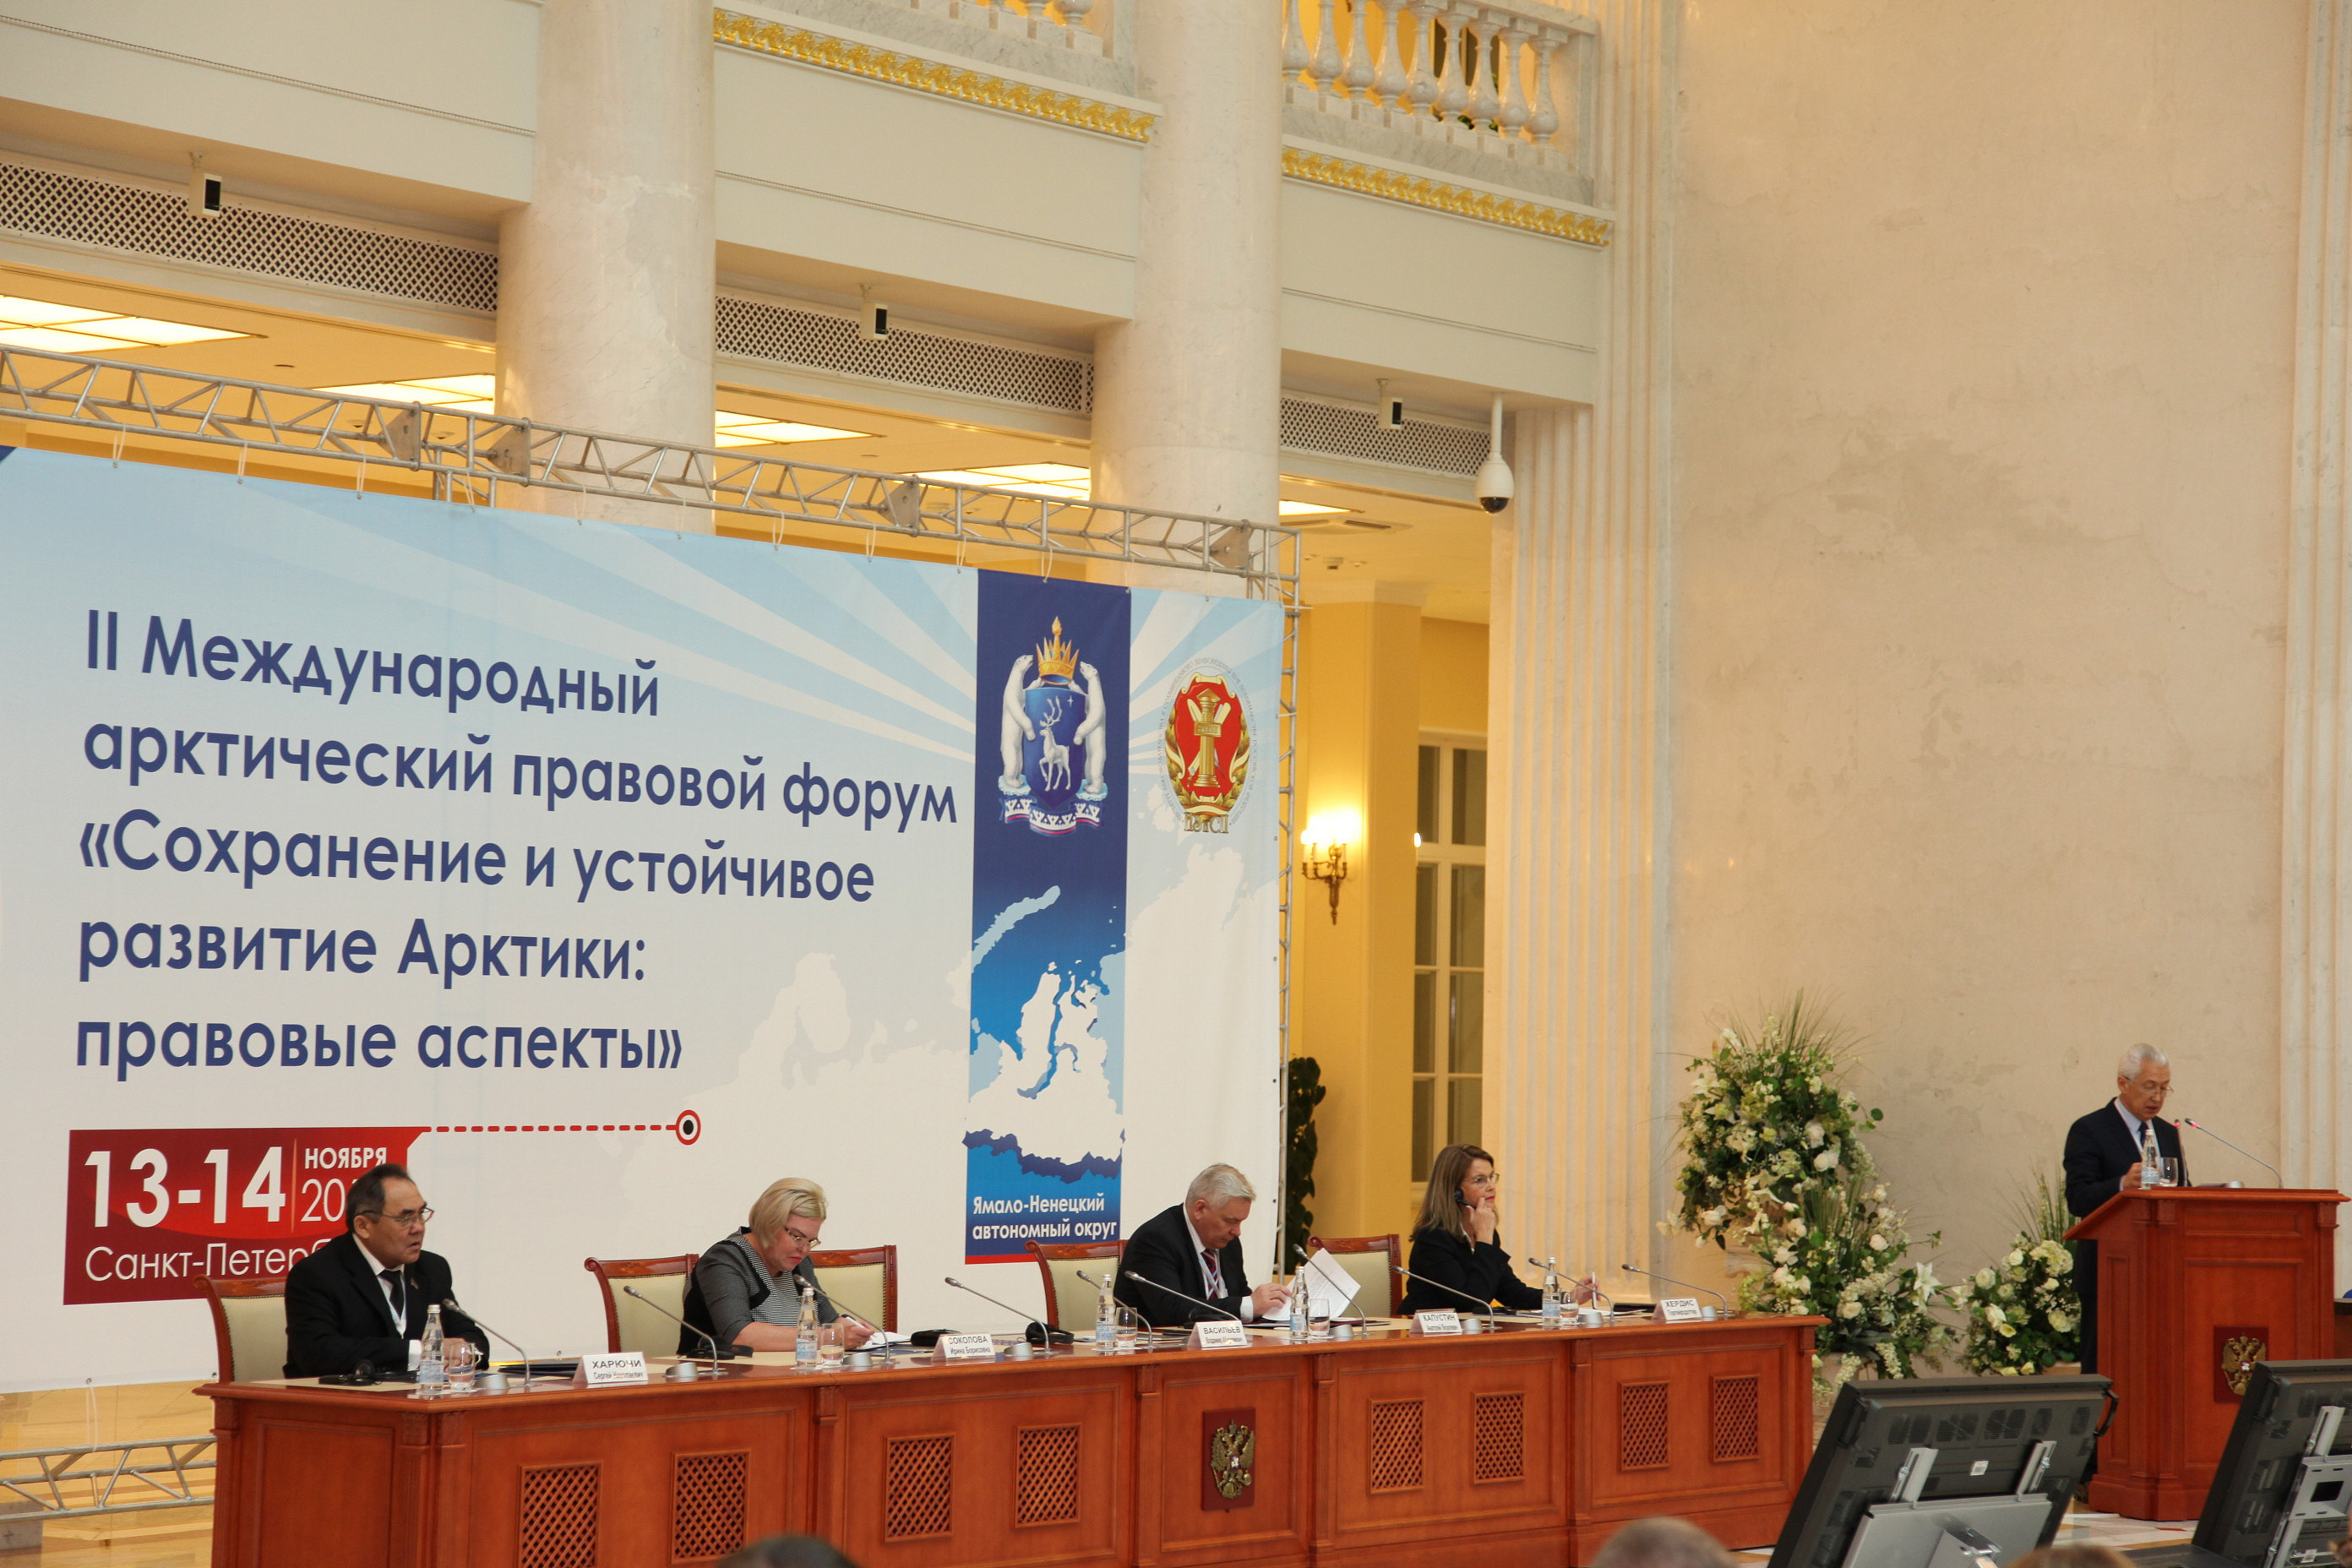 "Сохранение и устойчивое развитие Арктики: правовые аспекты" в Санкт-Петербурге